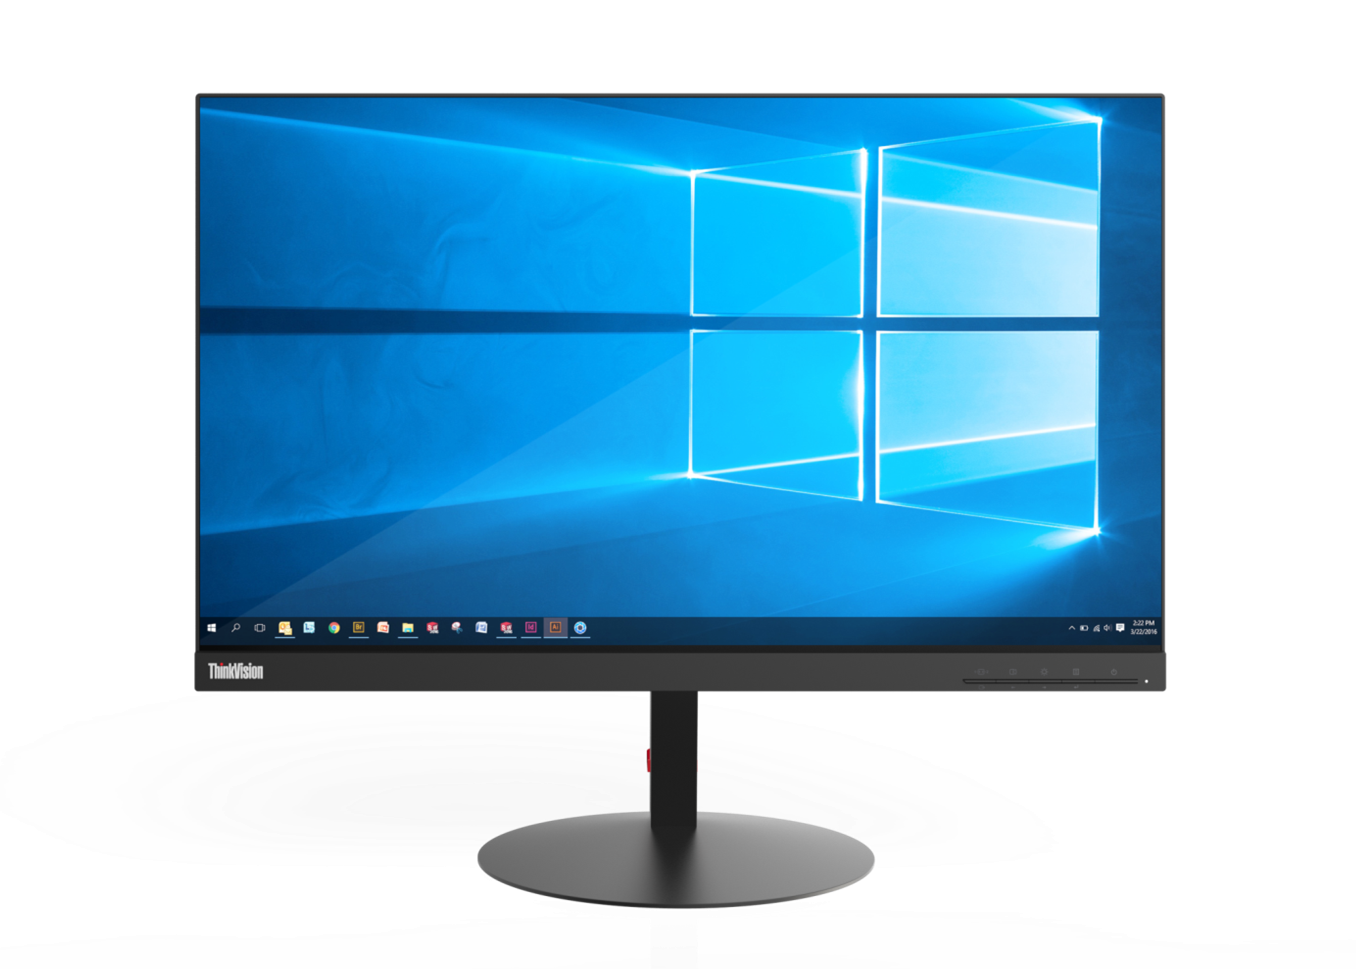 Immagine pubblicata in relazione al seguente contenuto: Lenovo annuncia i monitor con display QHD ThinkVision P27h e P24h | Nome immagine: news25538_Lenovo-ThinkVision-P27h_3.png